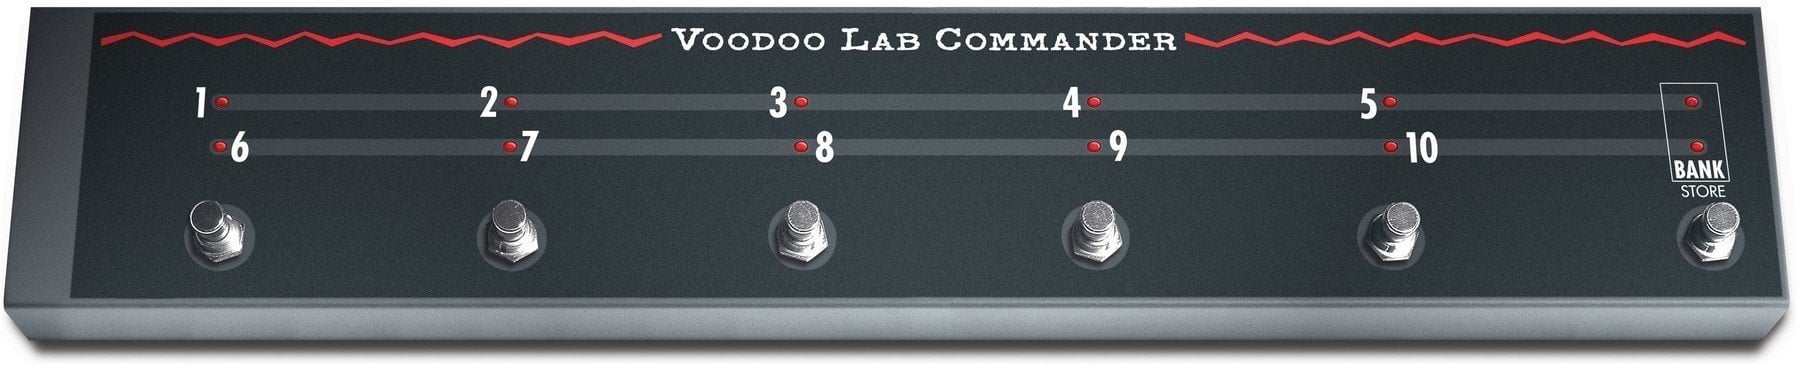 Pédalier pour ampli guitare Voodoo Lab Commander Pédalier pour ampli guitare